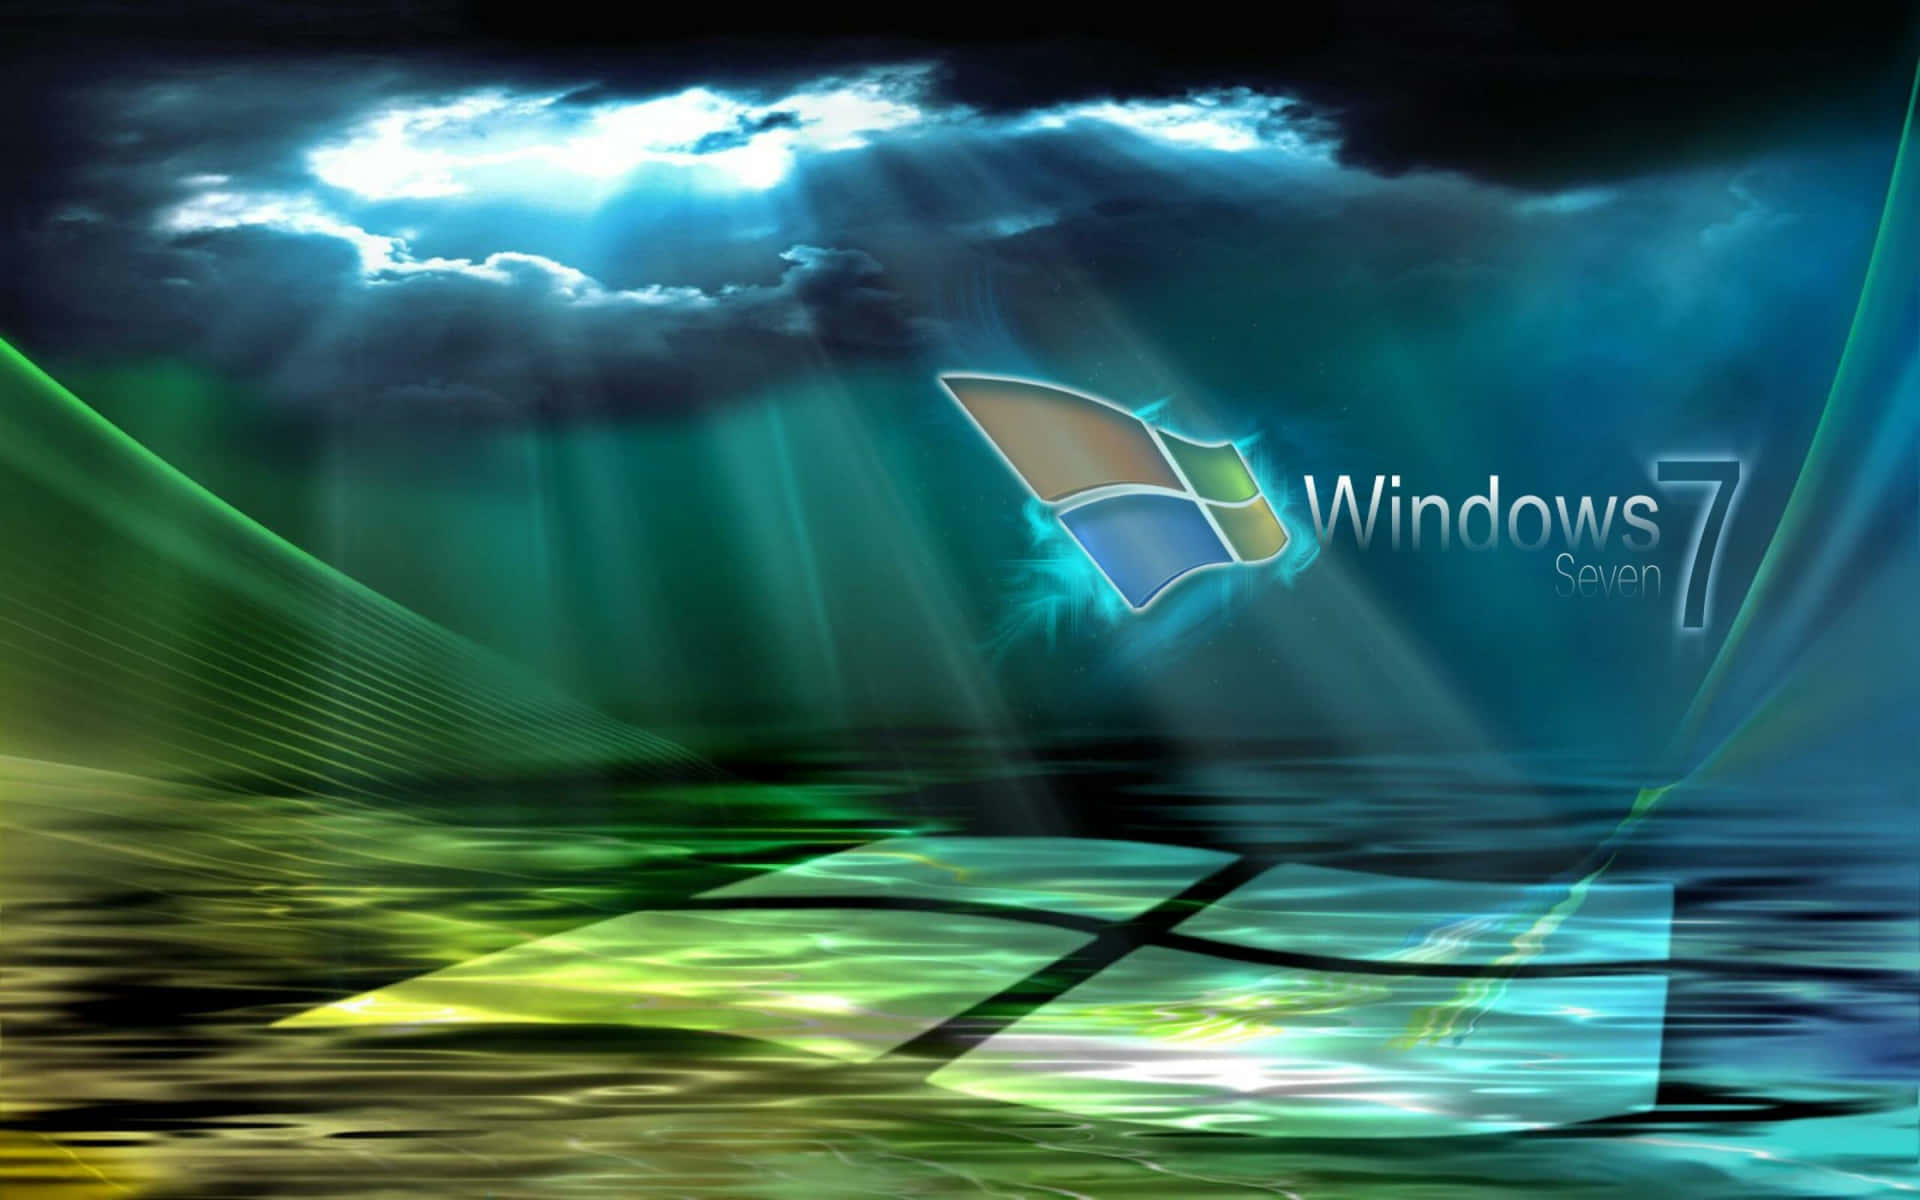 Windows7 Baggrund